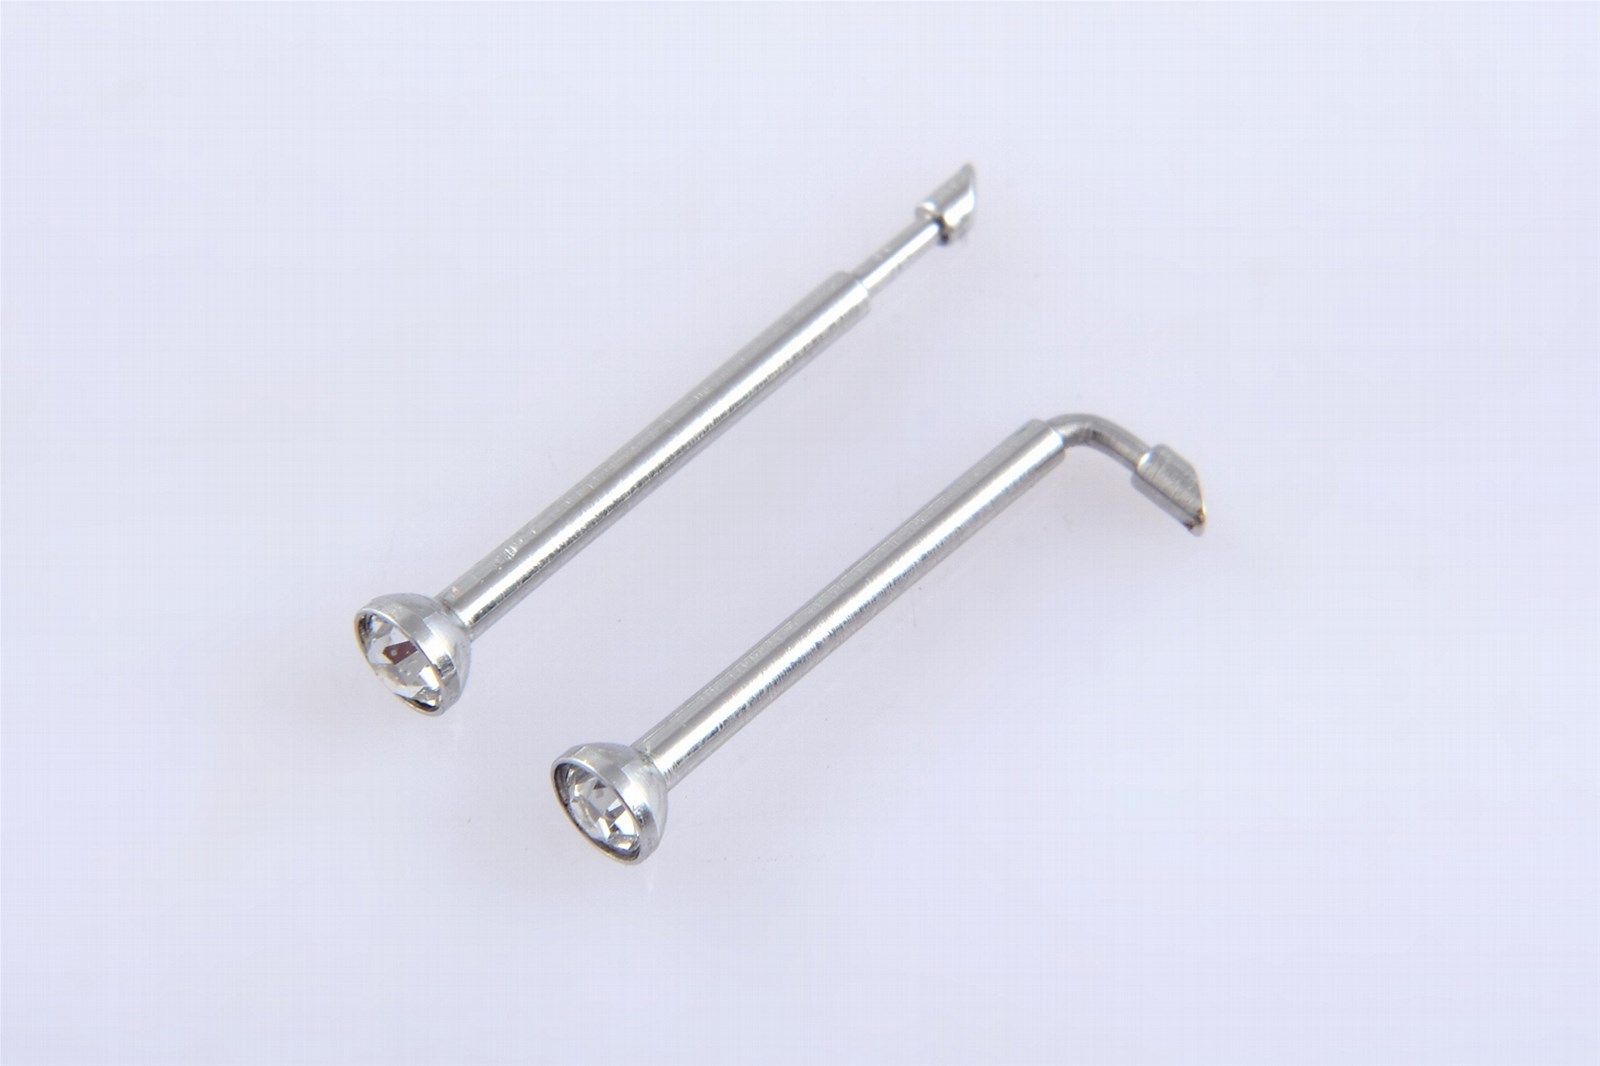 Disposable No Pain Safe Sterile Foldsafe Nose Piercing Gun Kit Piercing Tool